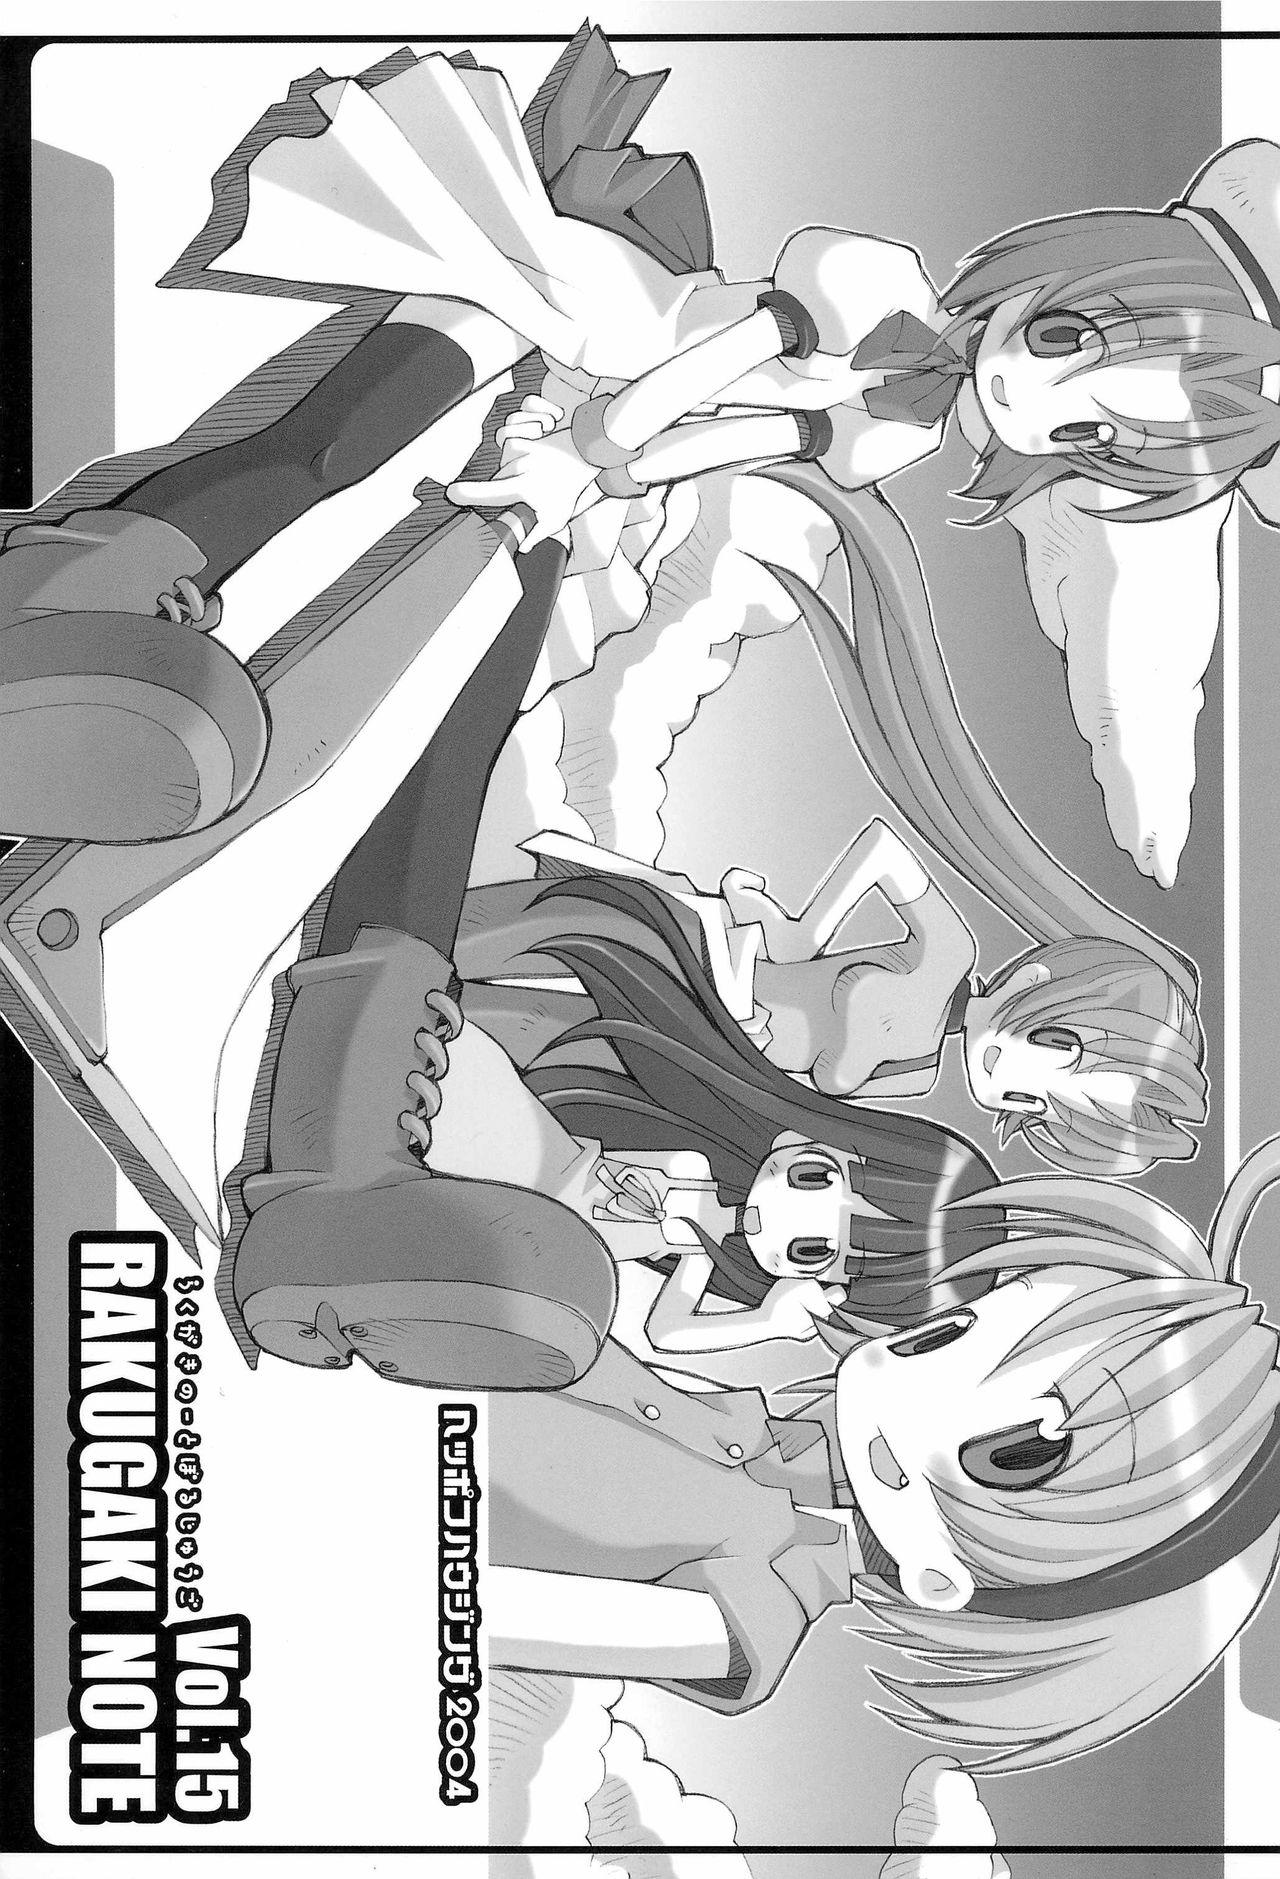 Whores RAKUGAKI NOTE vol.15 - Higurashi no naku koro ni Jeans - Picture 1